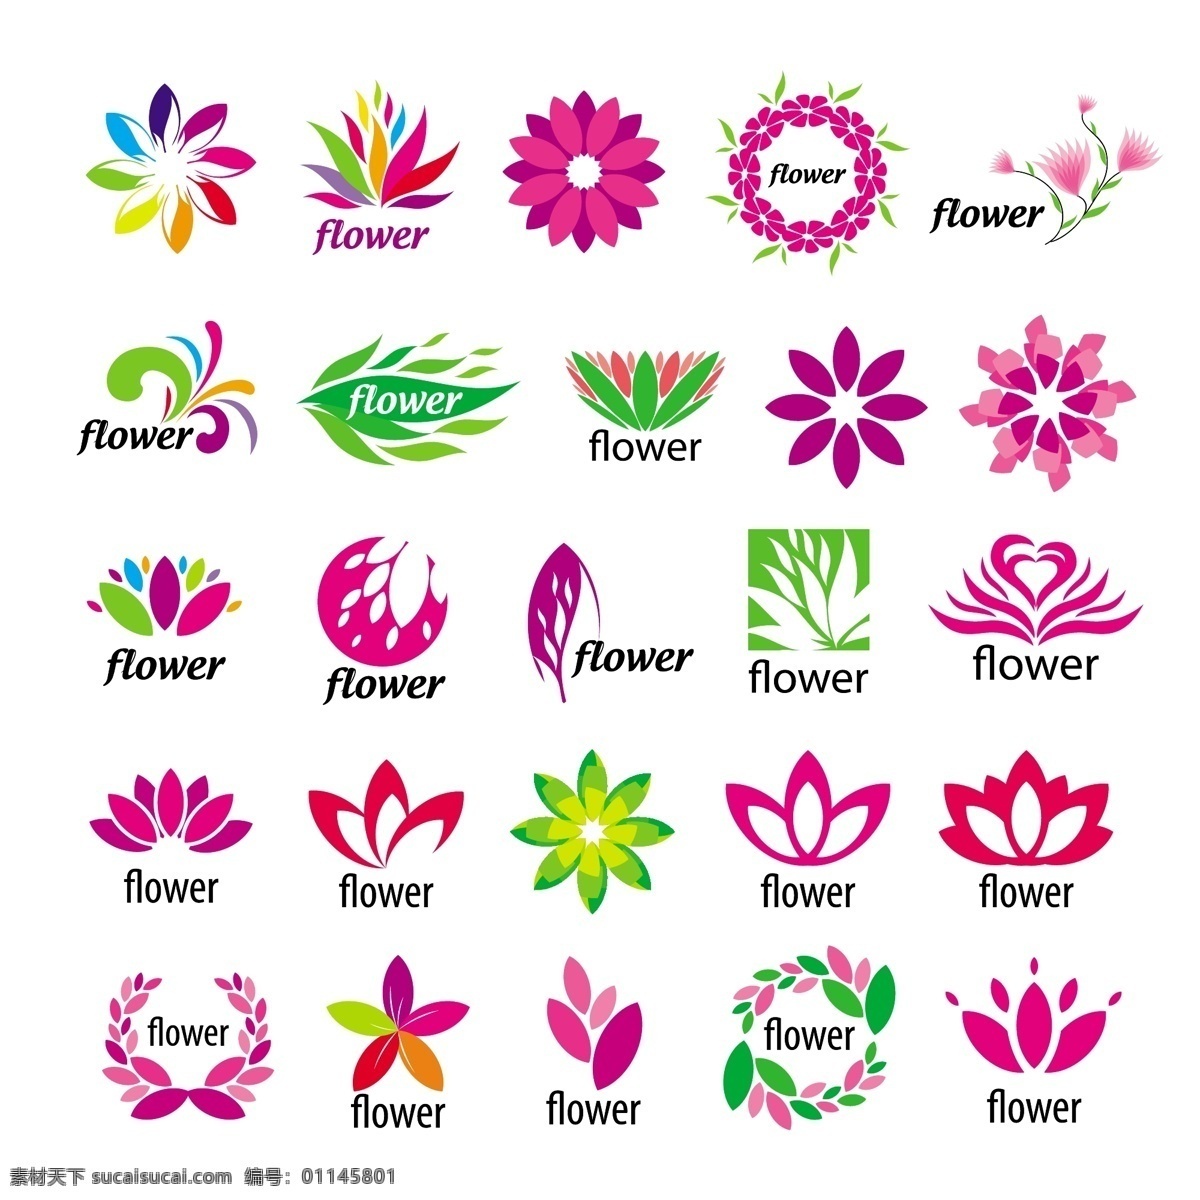 创意 鲜花 logo 标志设计 商标设计 logo图形 标志图标 矢量素材 白色